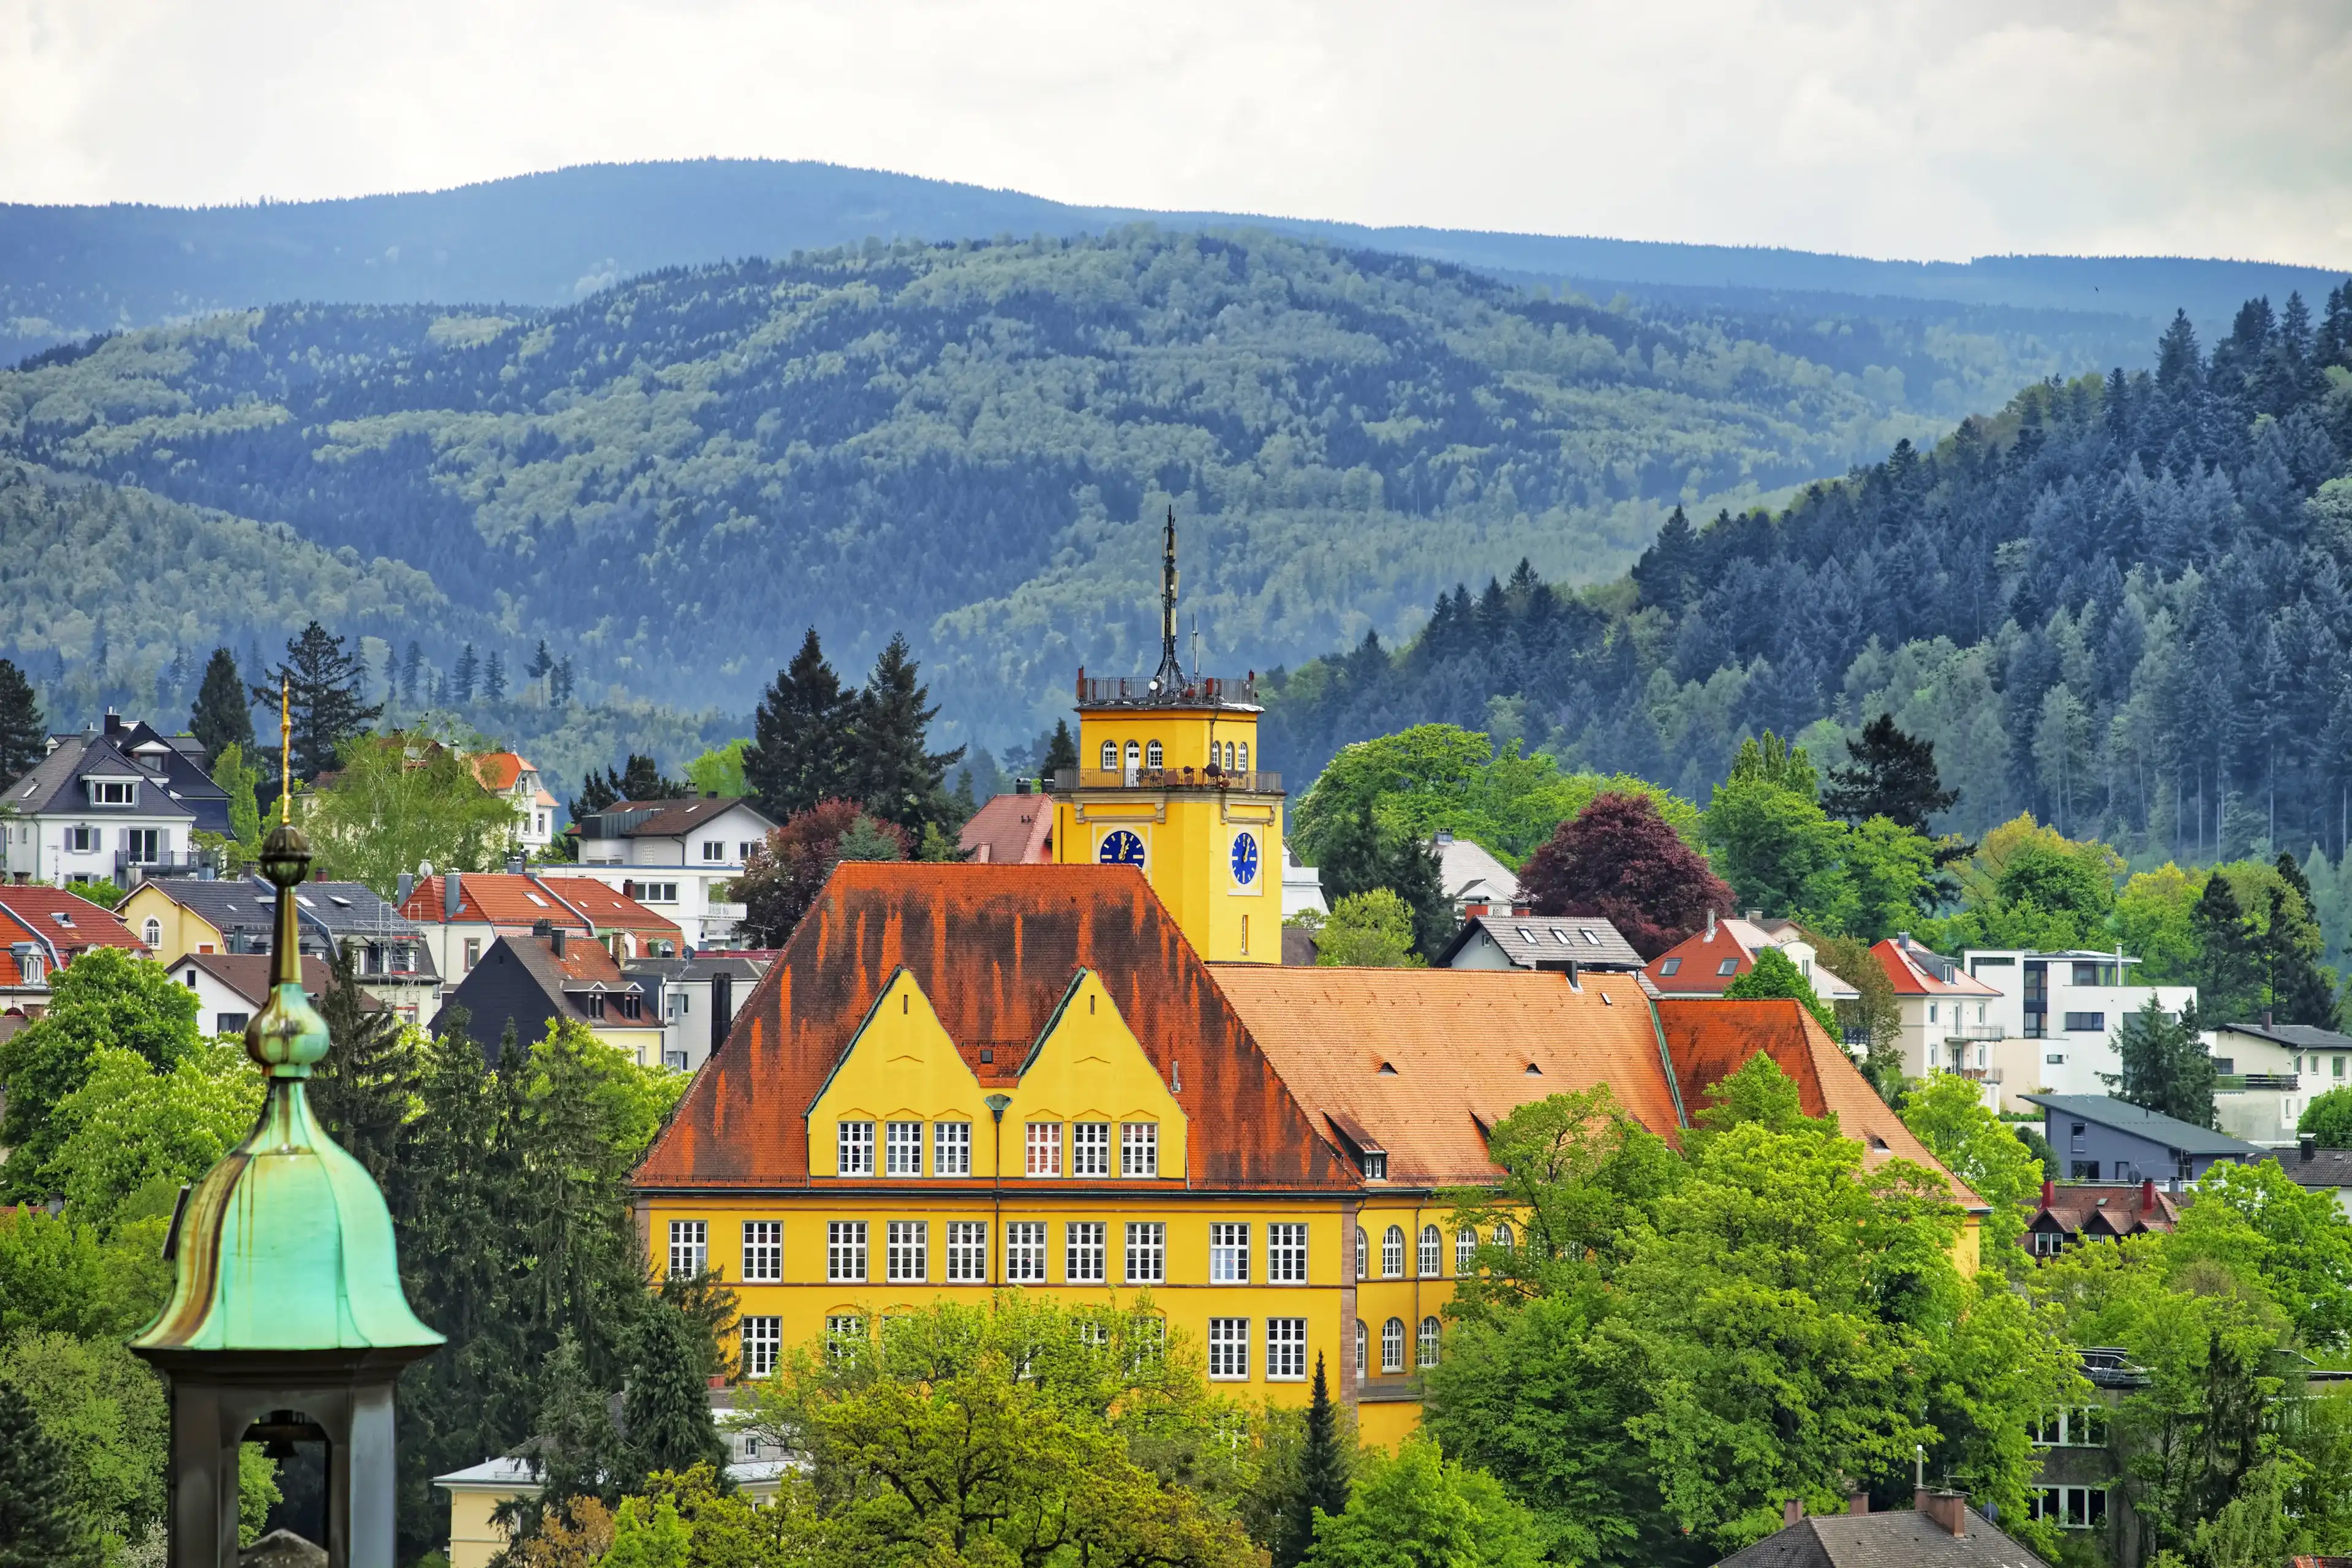 Best Baden-Baden hotels. Cheap hotels in Baden-Baden, Germany